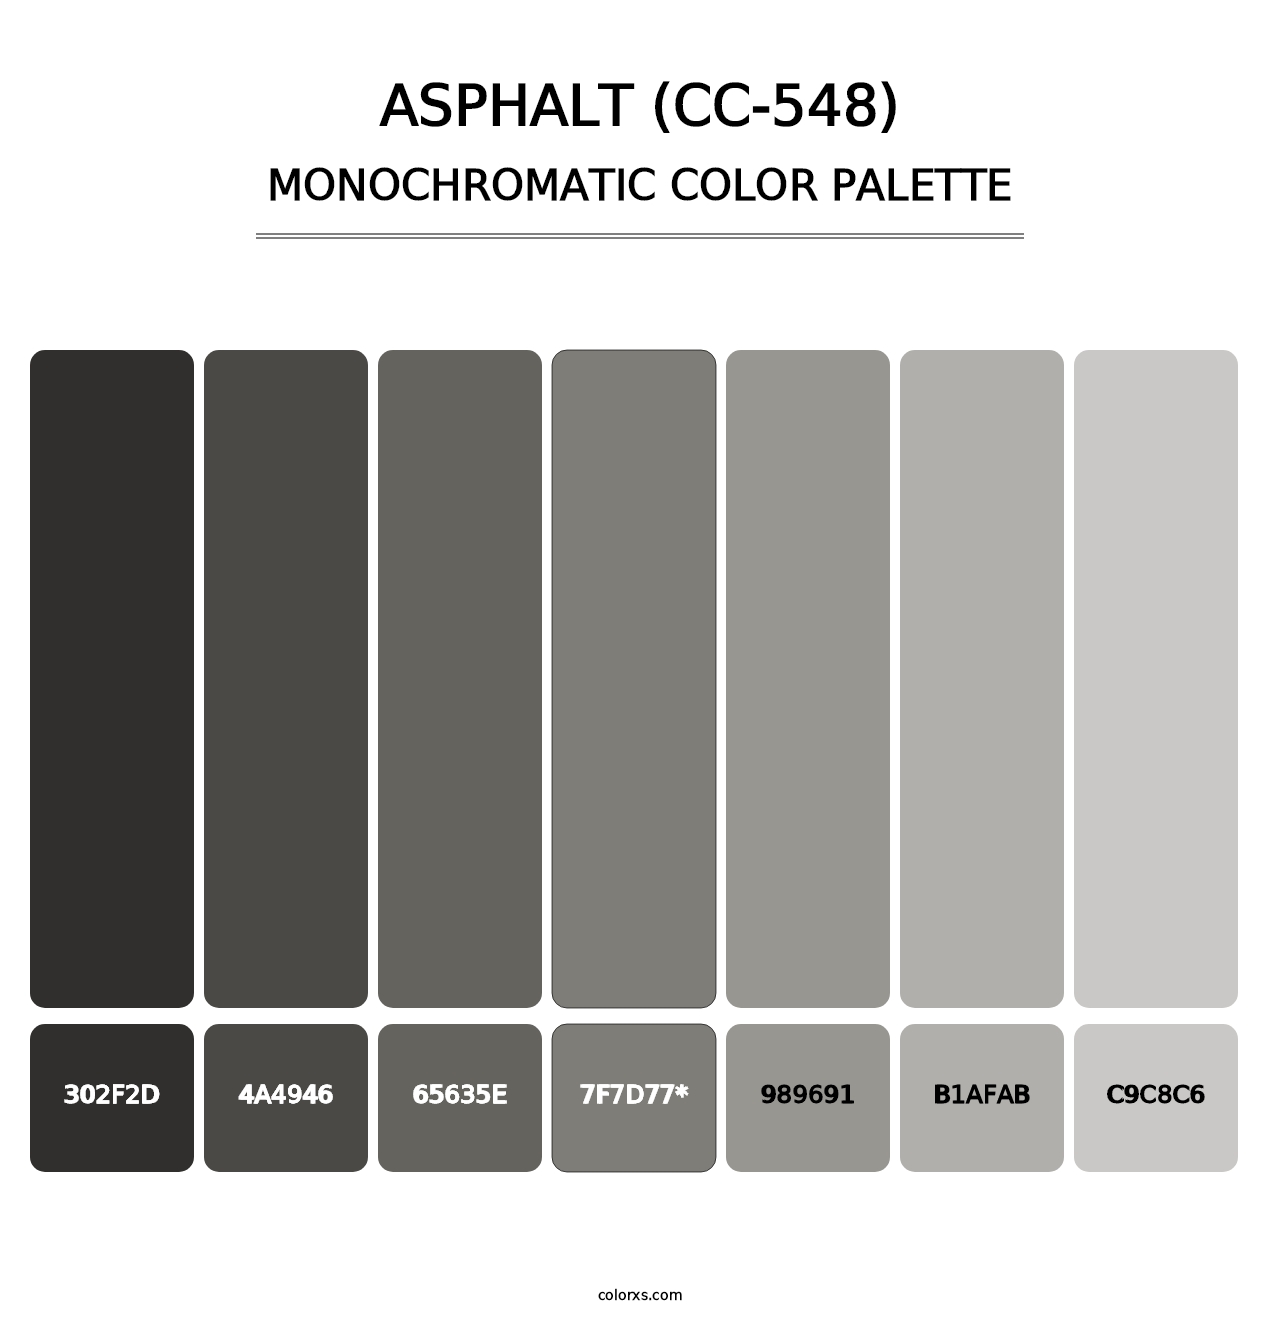 Asphalt (CC-548) - Monochromatic Color Palette